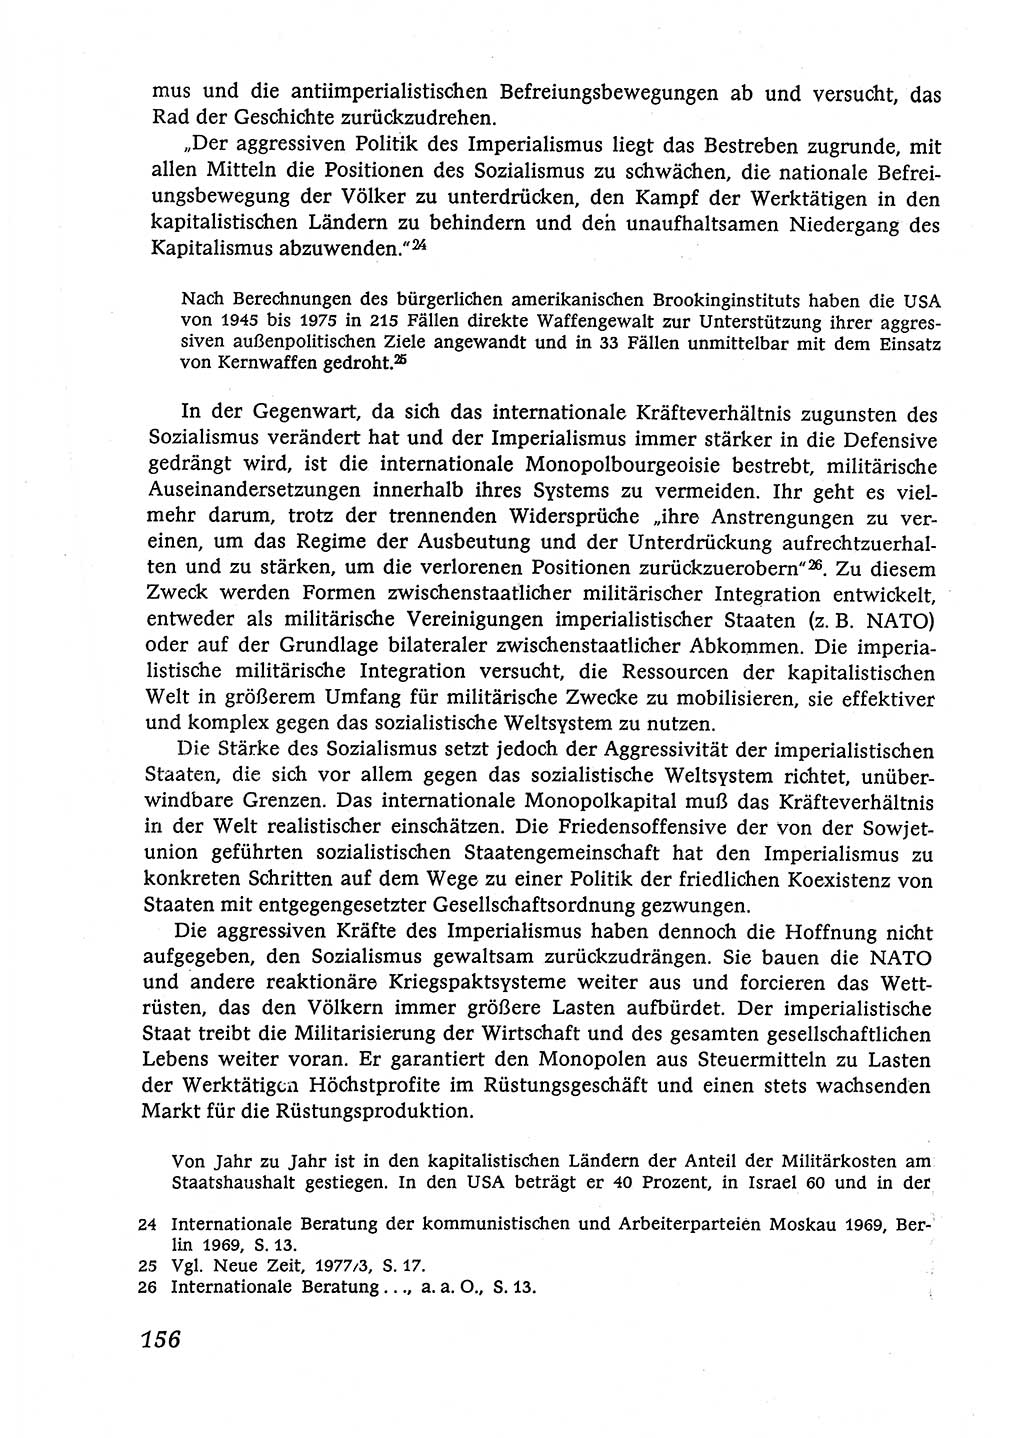 Marxistisch-leninistische (ML) Staats- und Rechtstheorie [Deutsche Demokratische Republik (DDR)], Lehrbuch 1980, Seite 156 (ML St.-R.-Th. DDR Lb. 1980, S. 156)